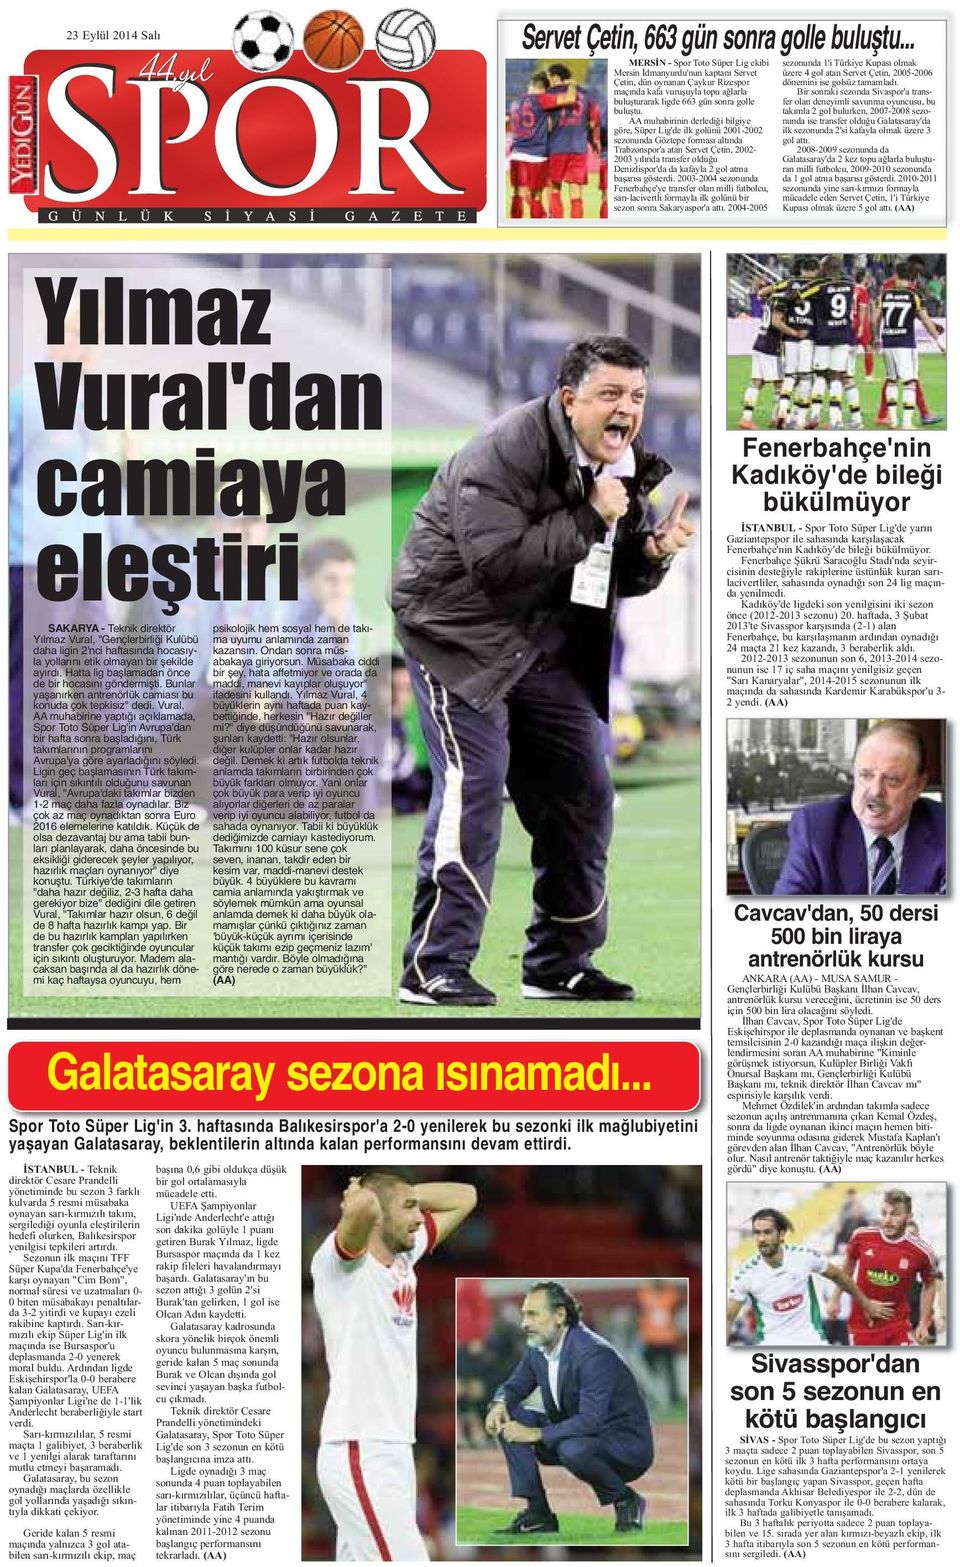 AA muhabirinin derlediği bilgiye göre, Süper Lig'de ilk golünü 2001-2002 sezonunda Göztepe forması altında Trabzonspor'a atan Servet Çetin, 2002-2003 yılında transfer olduğu Denizlispor'da da kafayla